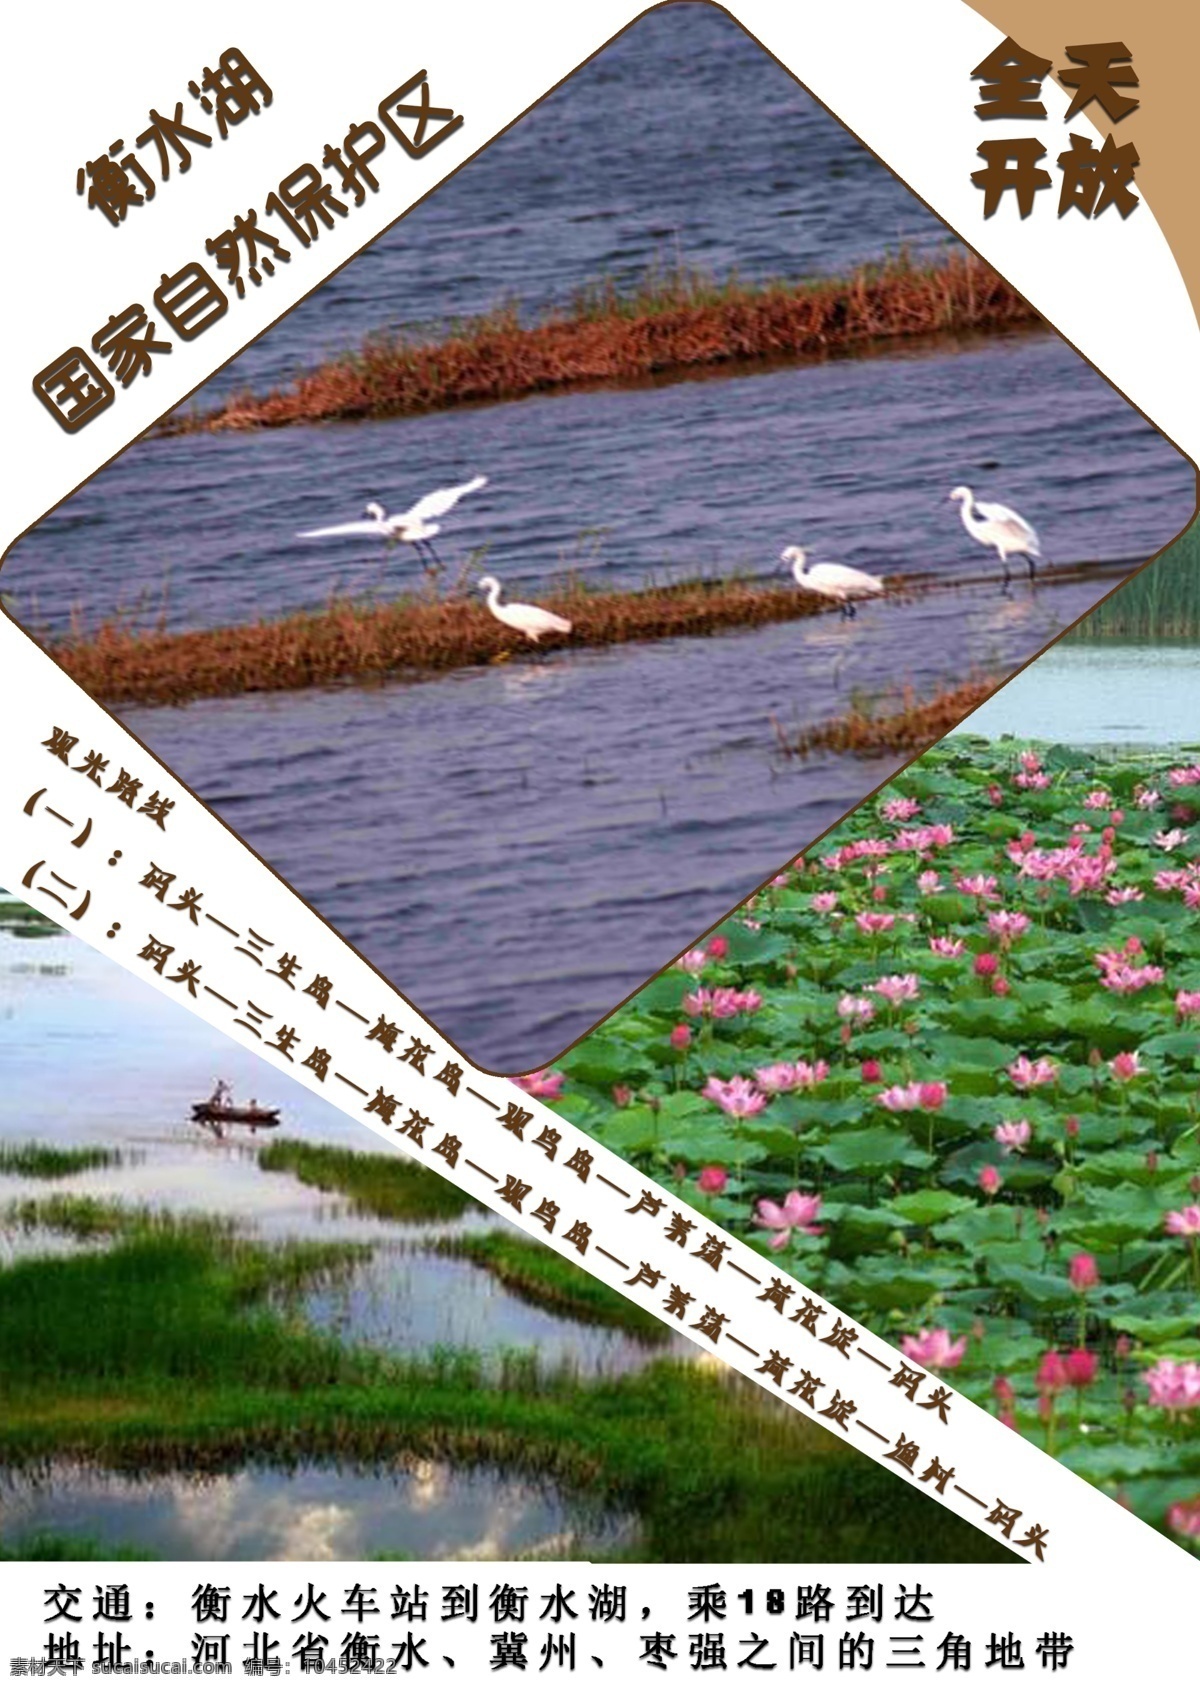 衡水 湖 国家 自然保护区 景点 景区 衡水湖 宣传页 白色